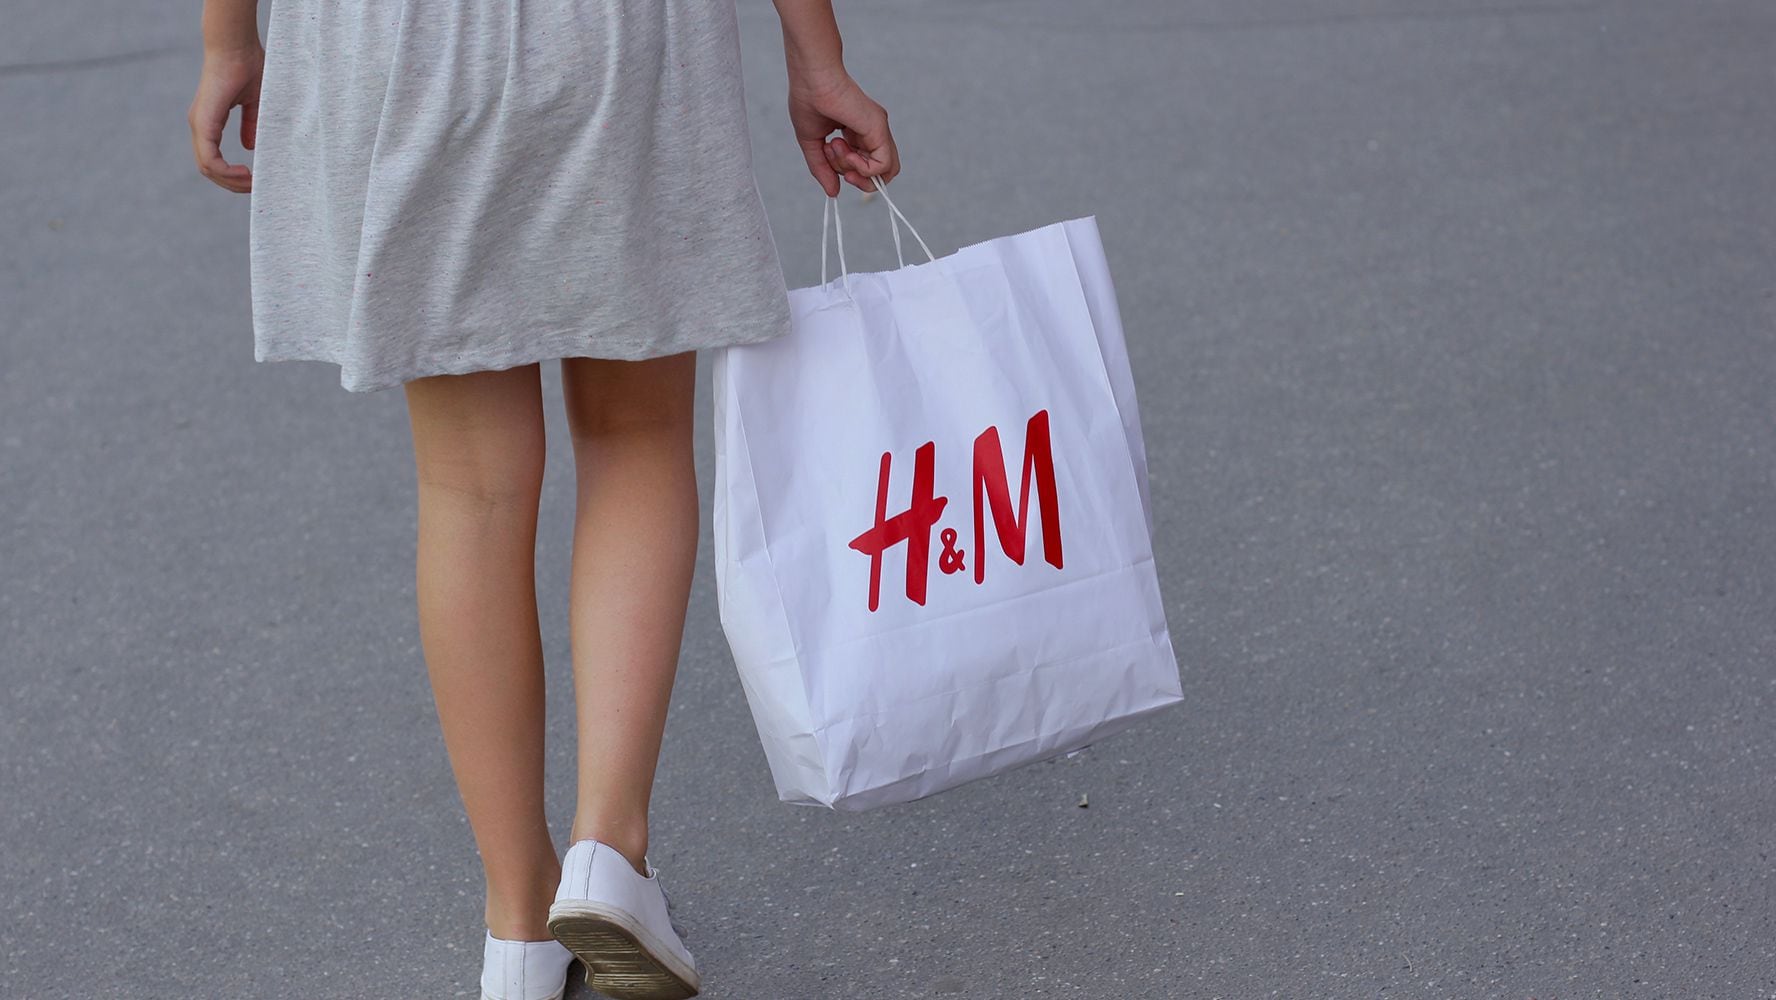 ropa que ya no usas? H&M te la cambia cupones de descuento – El Financiero